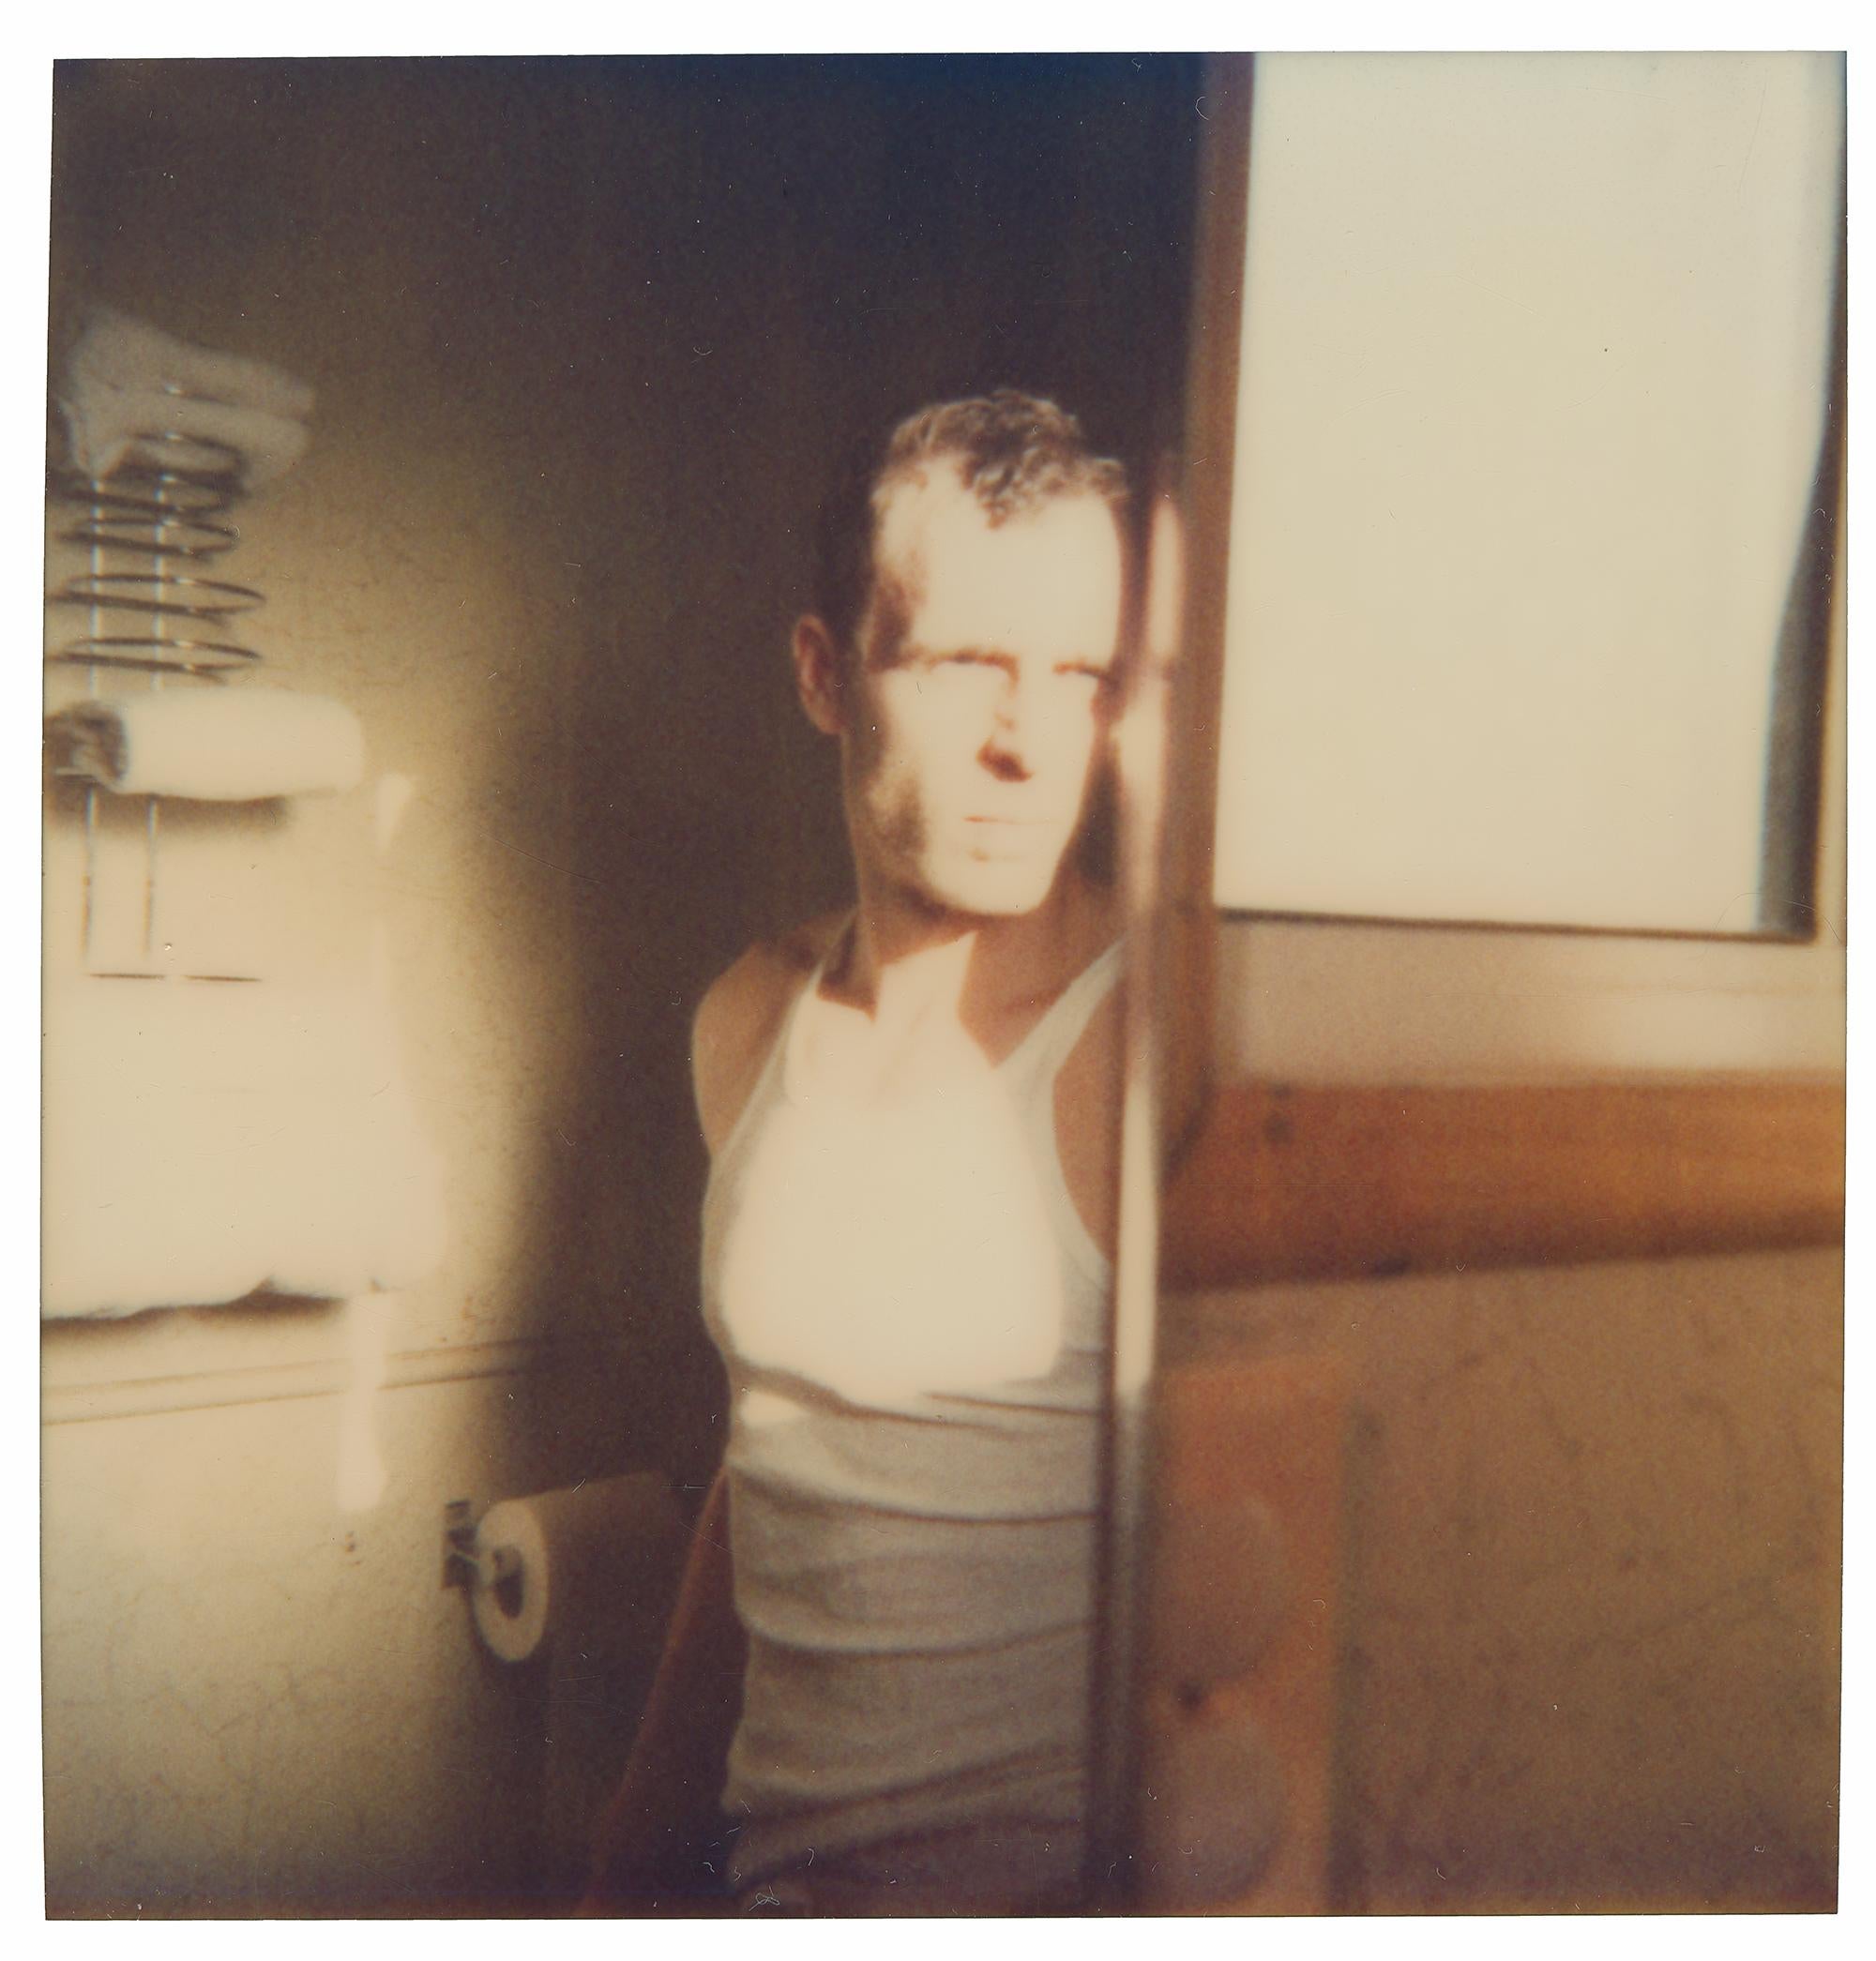 Morning Light (29 Palms, Kalifornien) – Polaroid, 20. Jahrhundert, Farbe, Porträt, Farbe